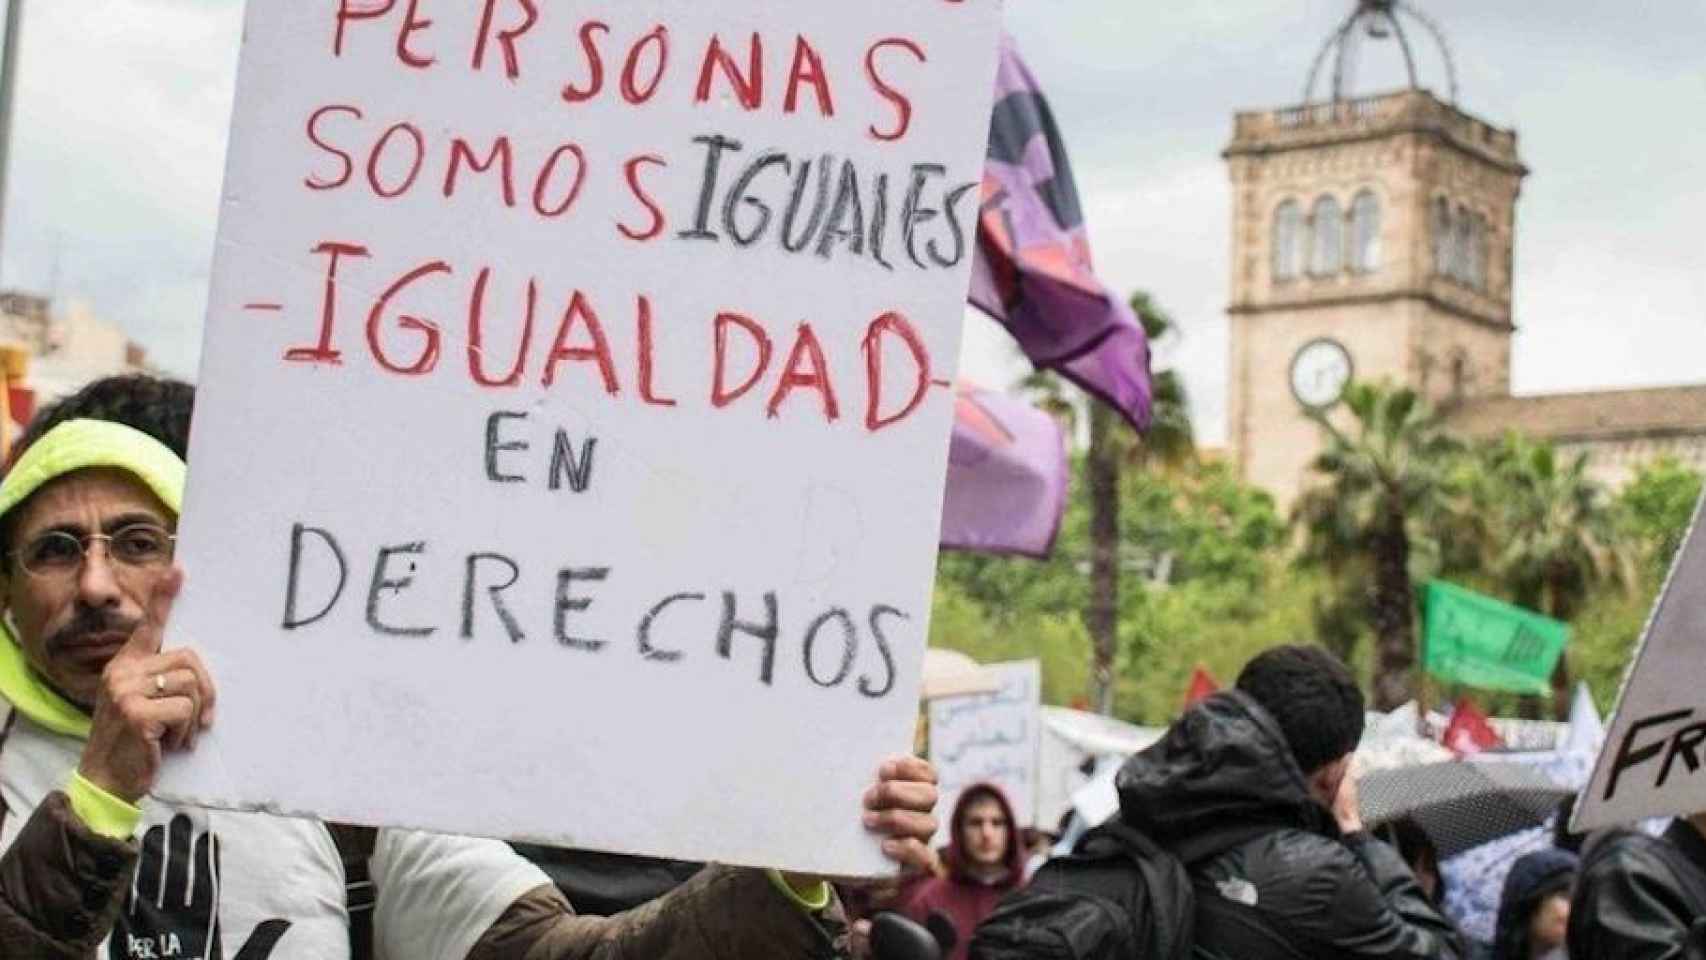 Manifestación en Barcelona a favor de la igualdad y contra la discriminación / ARCHIVO